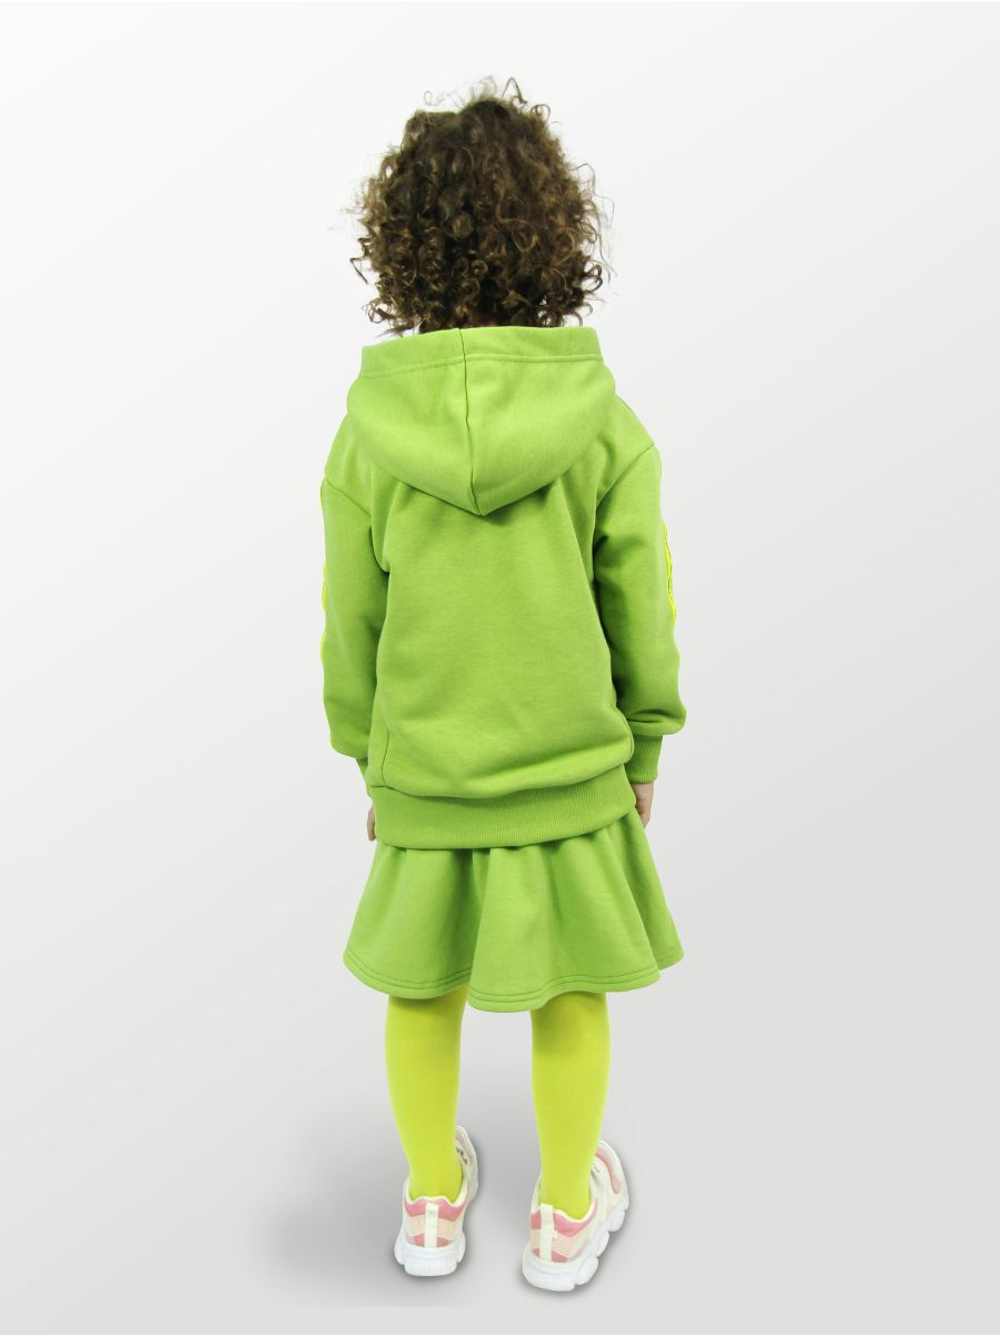 Худи для детей, модель №1, рост 98 см, зеленый